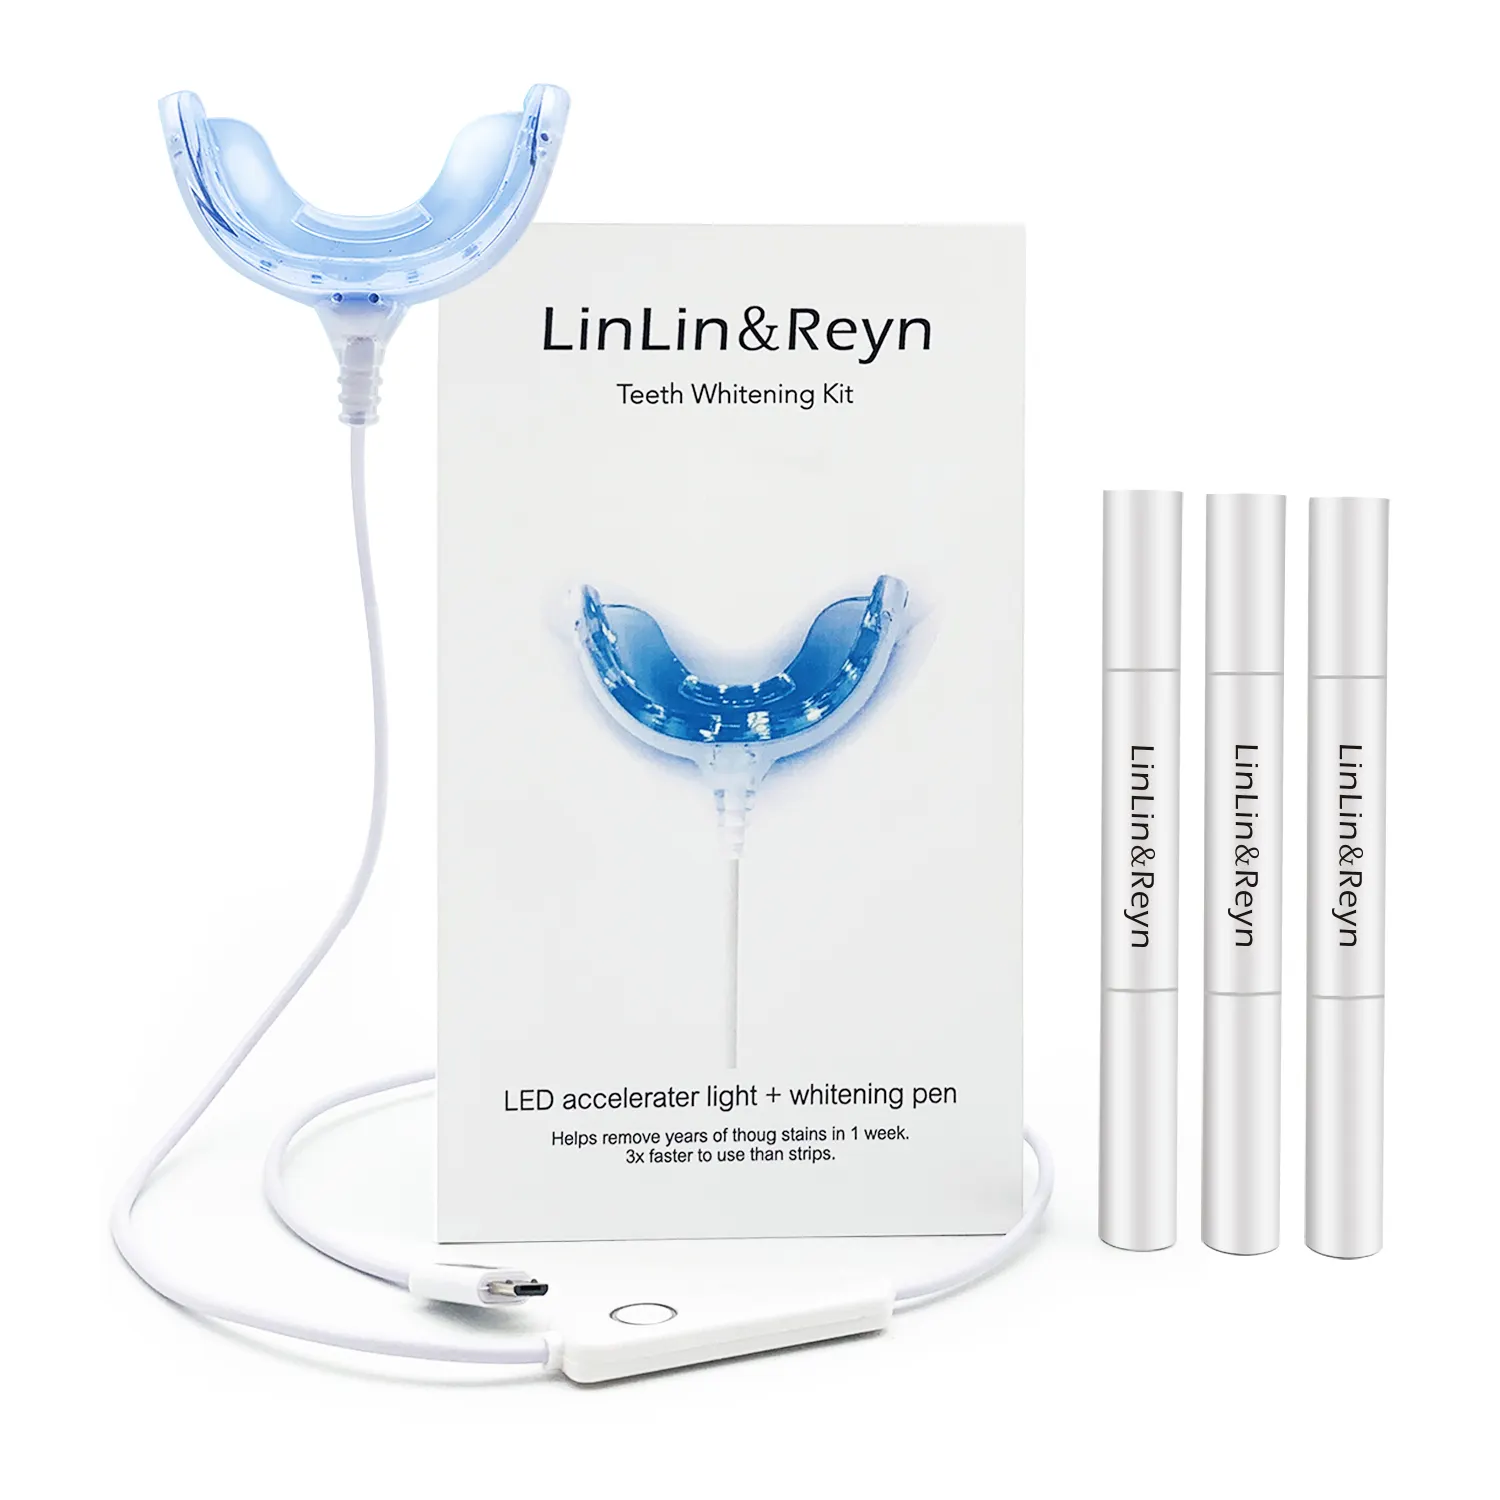 Msds dental 3-en-1 cable 3 pluma de gel de blanqueamiento en oficina gel blanqueador de dientes kit 35% de peróxido de hidrógeno